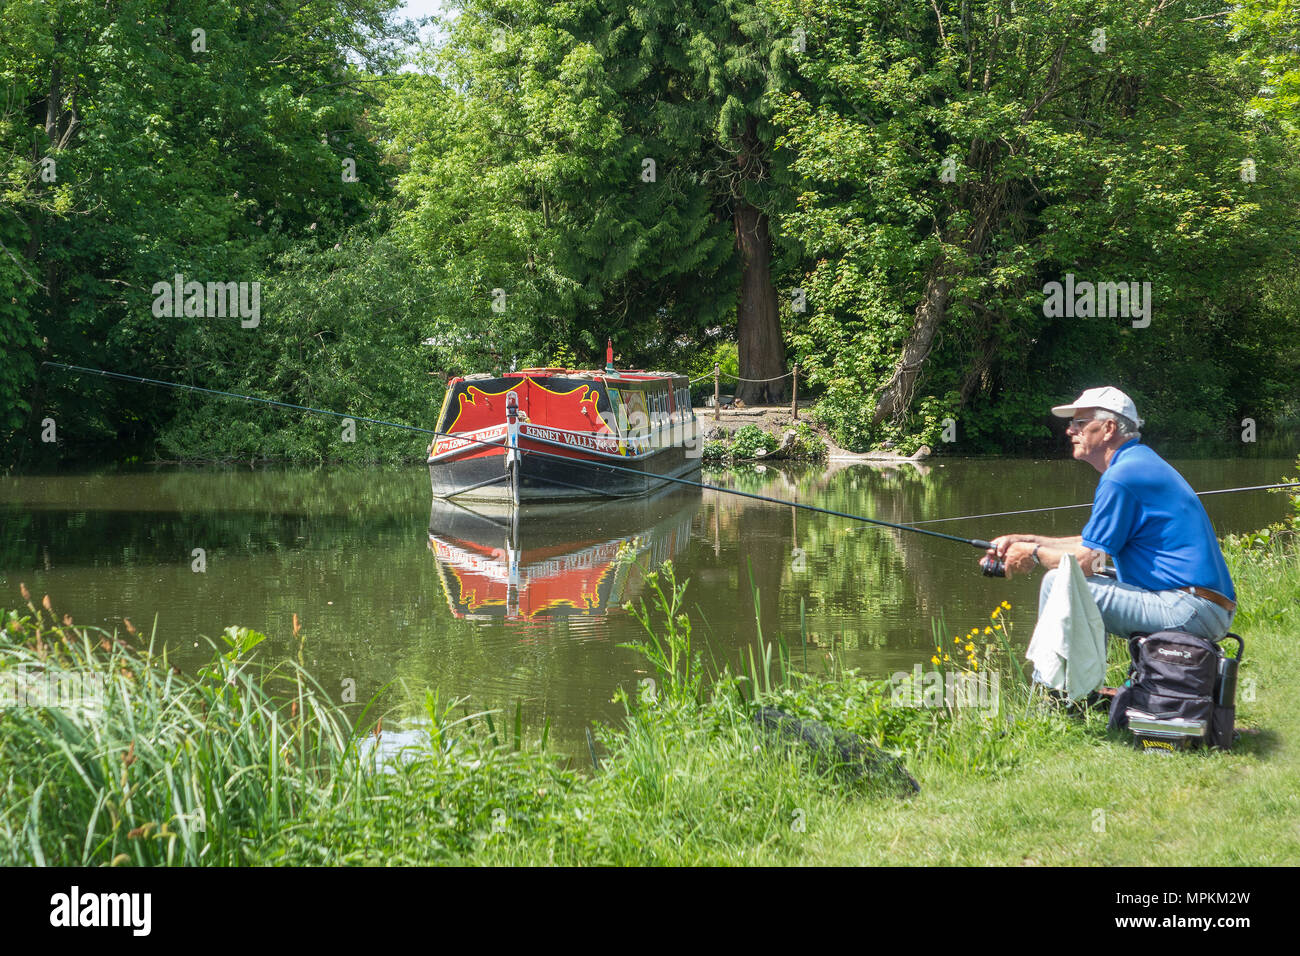 England, Berkshire, Kintbury, Kennet and Avon Canal, Fischer Stockfoto